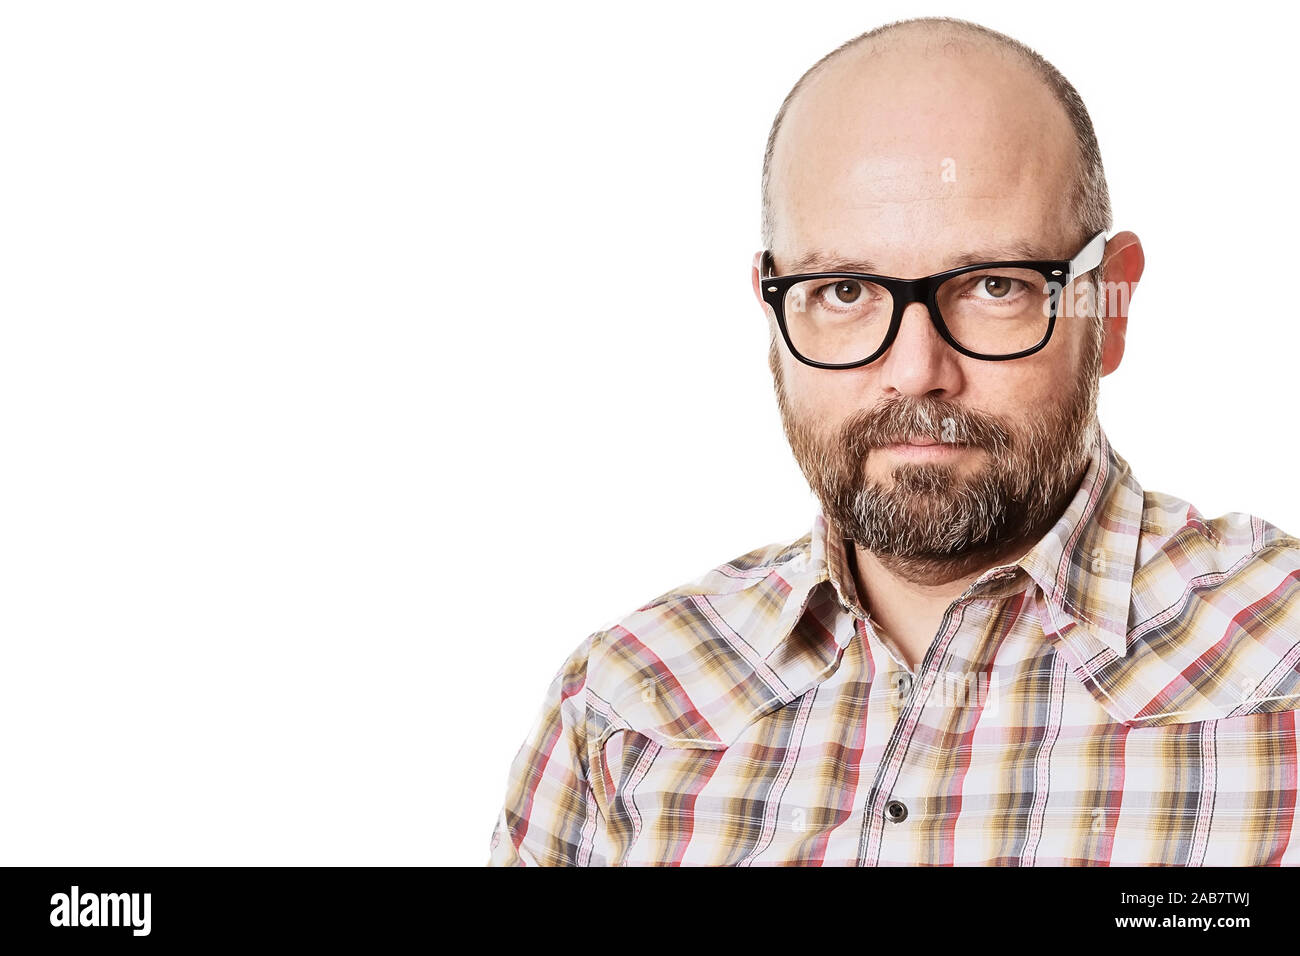 Ein Mann mit Brille und Bart vor weissem Hintergrund Stock Photo